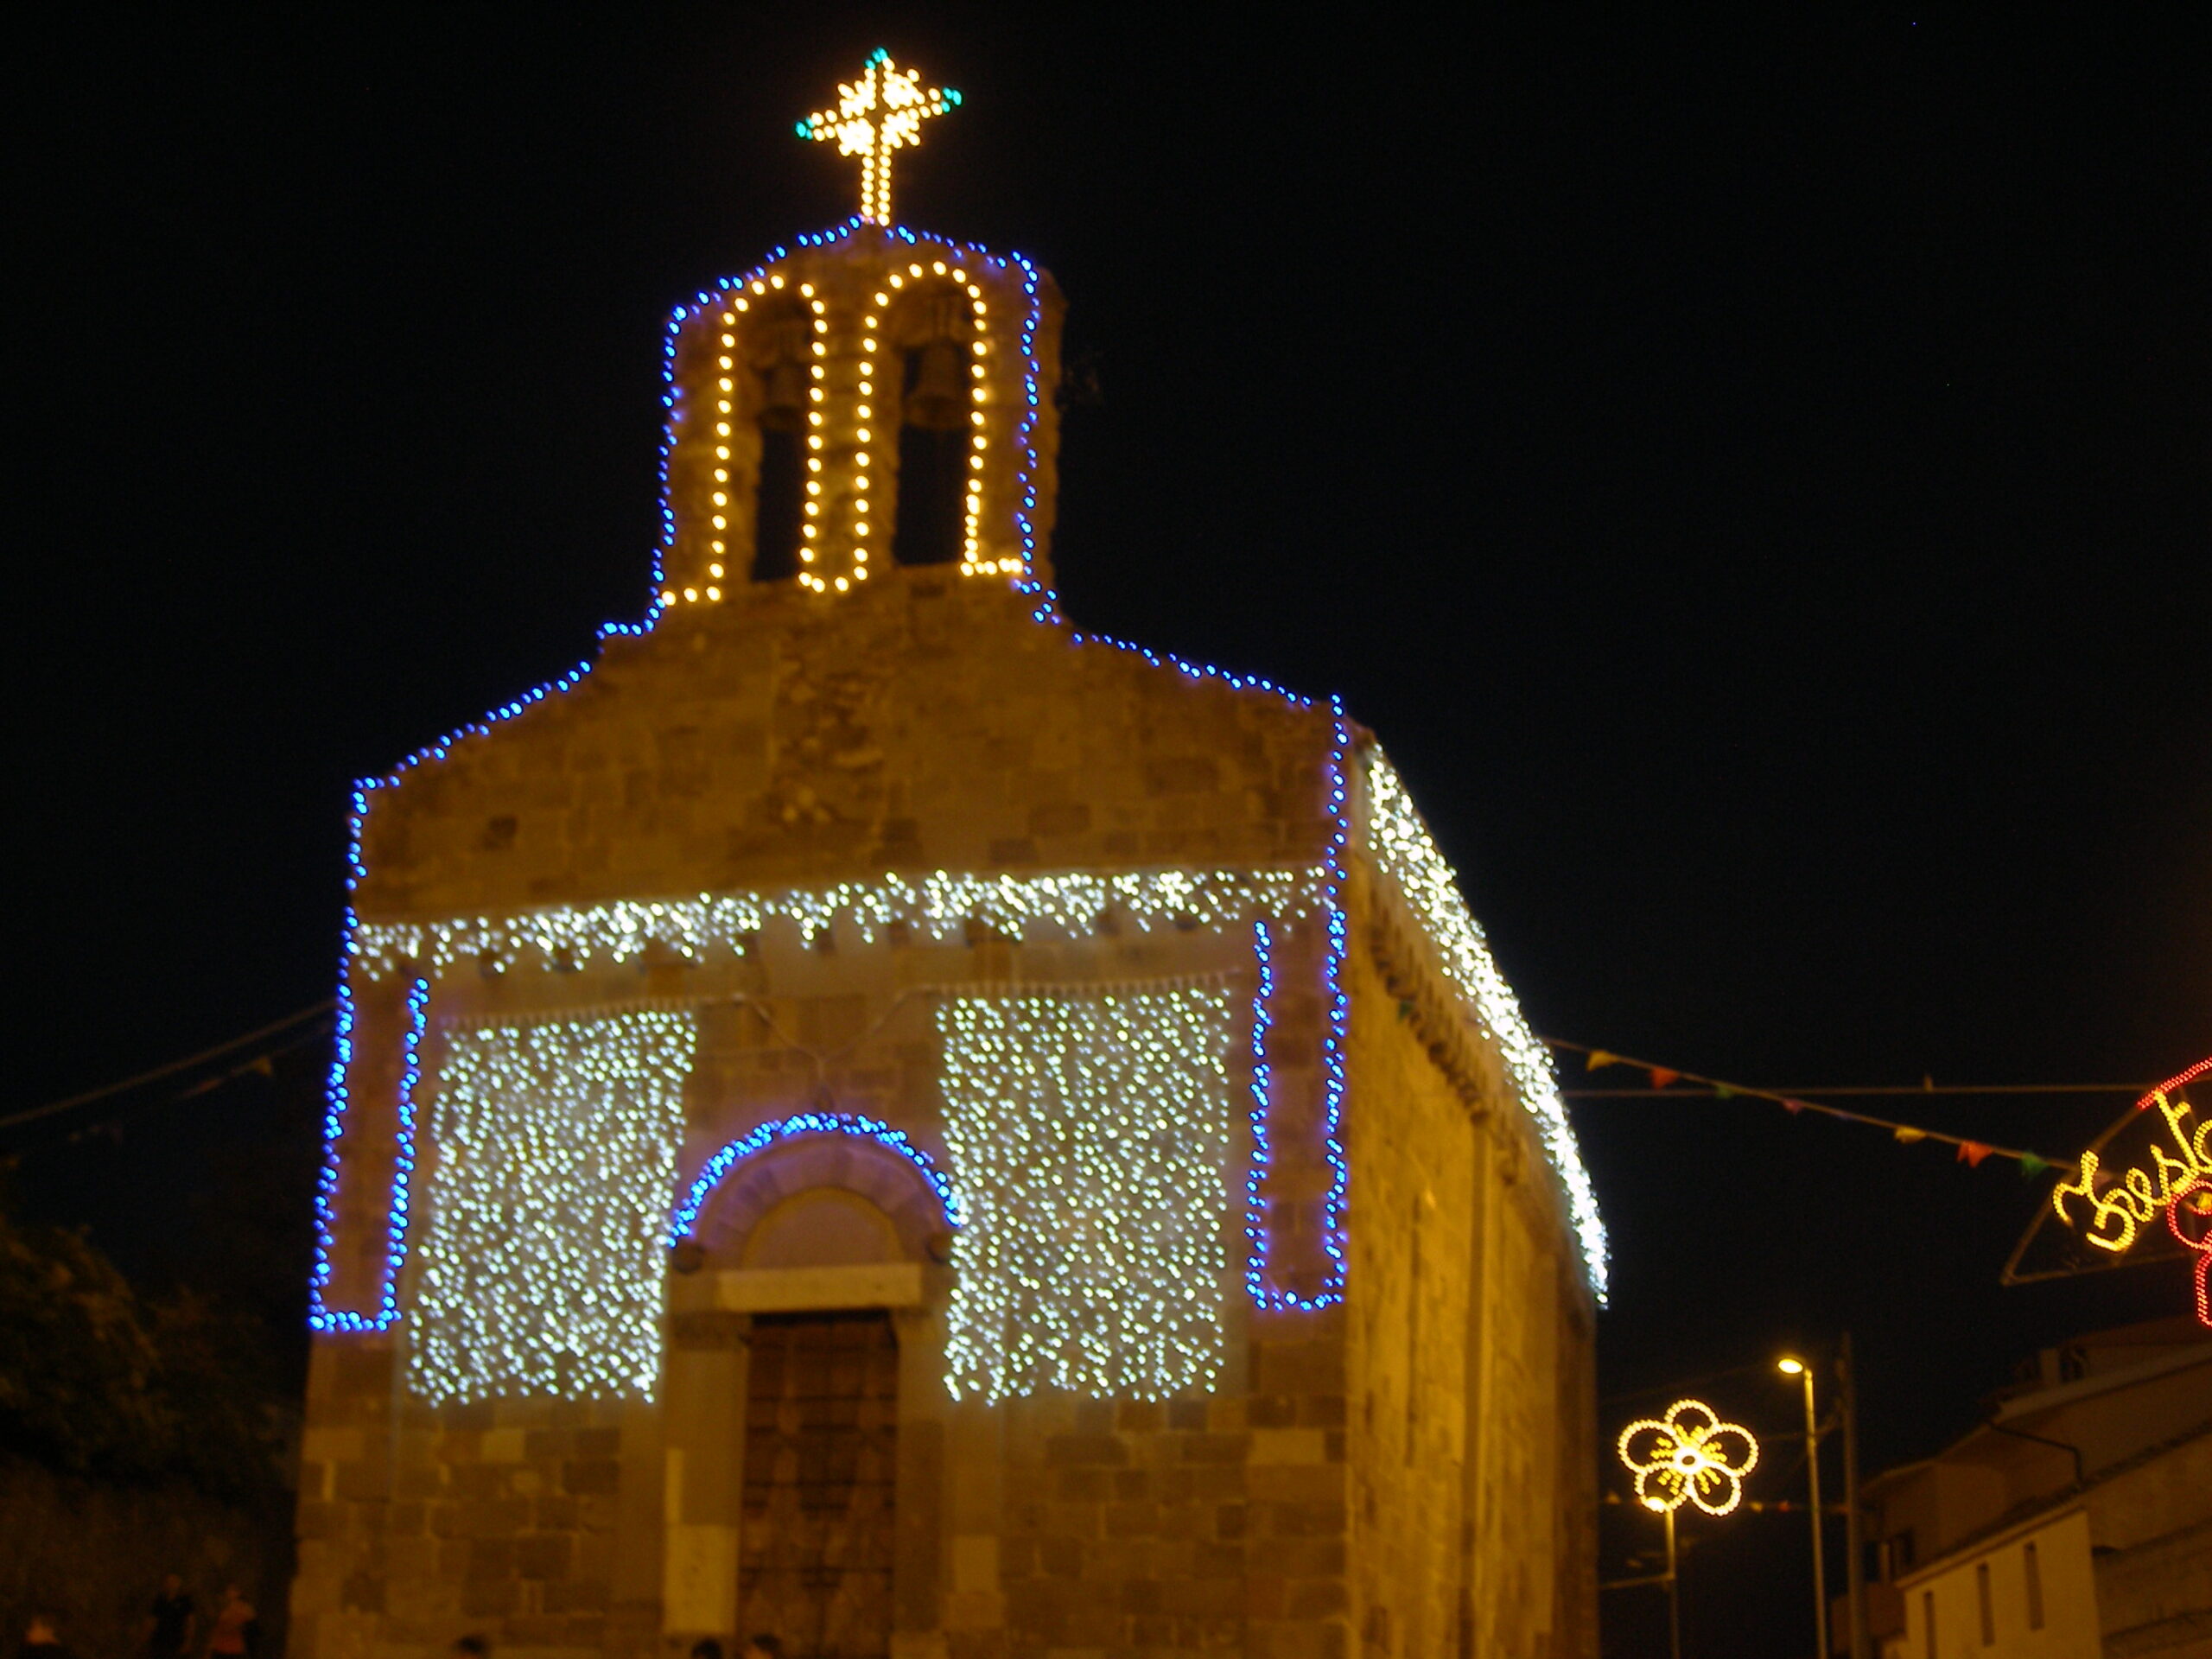 San Geminiano - Samassi luminarie chiesa sardegna